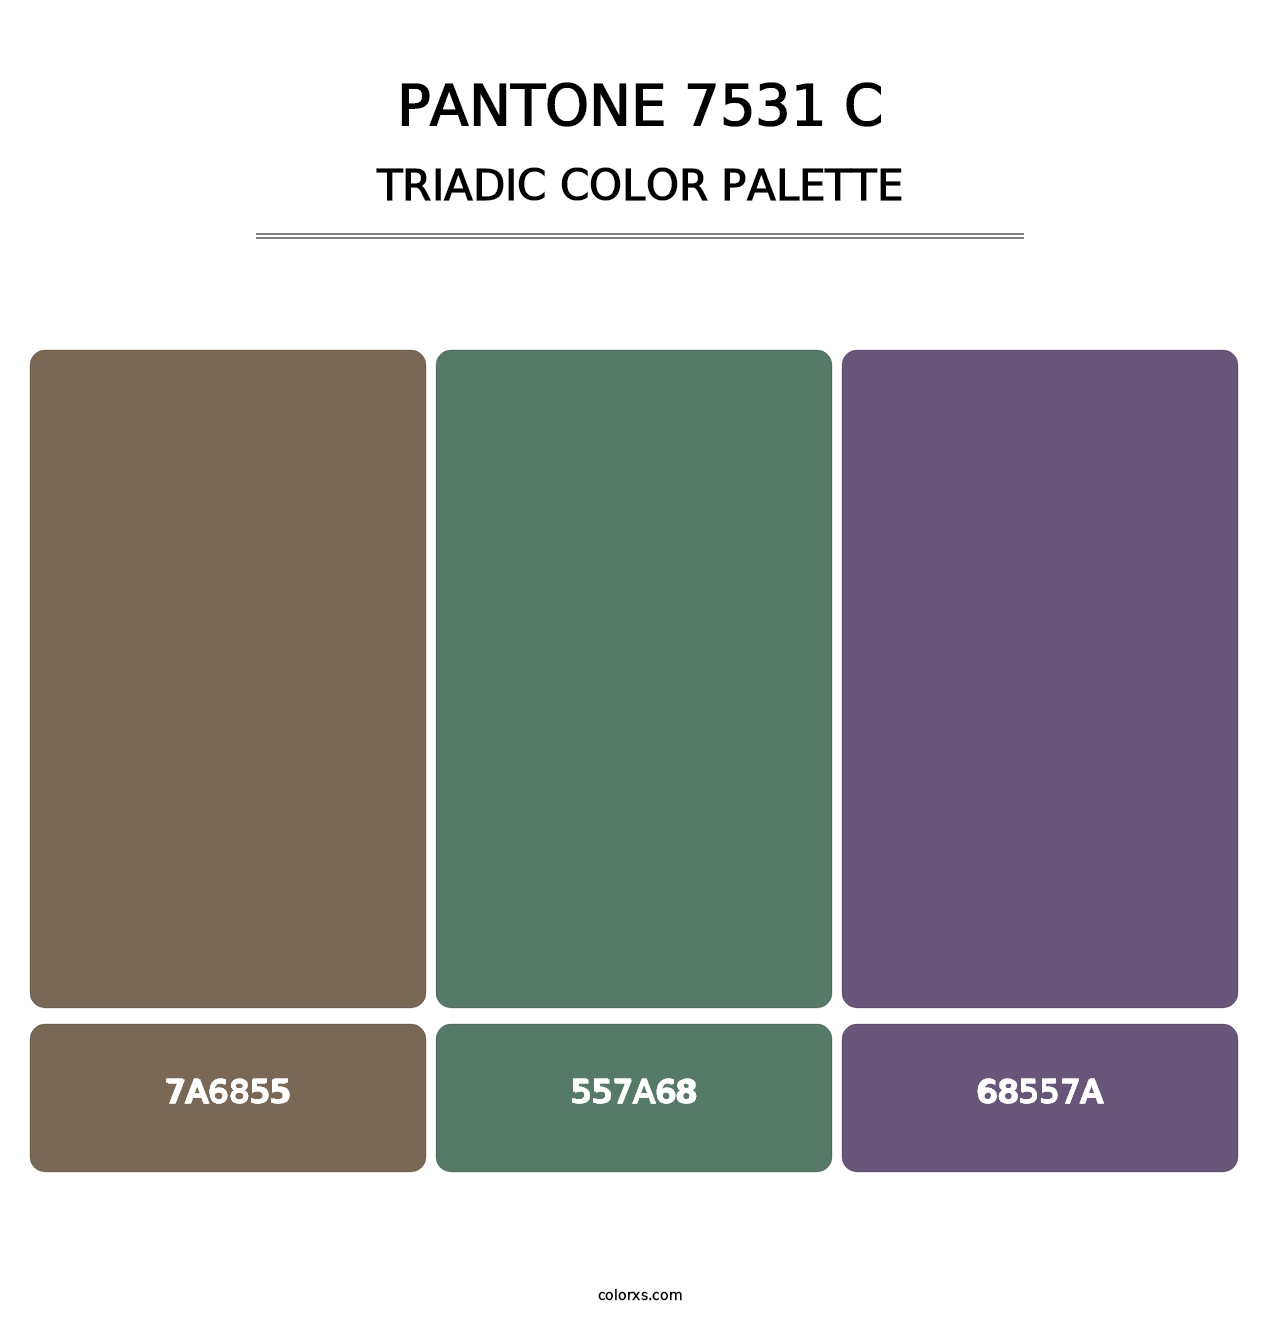 PANTONE 7531 C - Triadic Color Palette